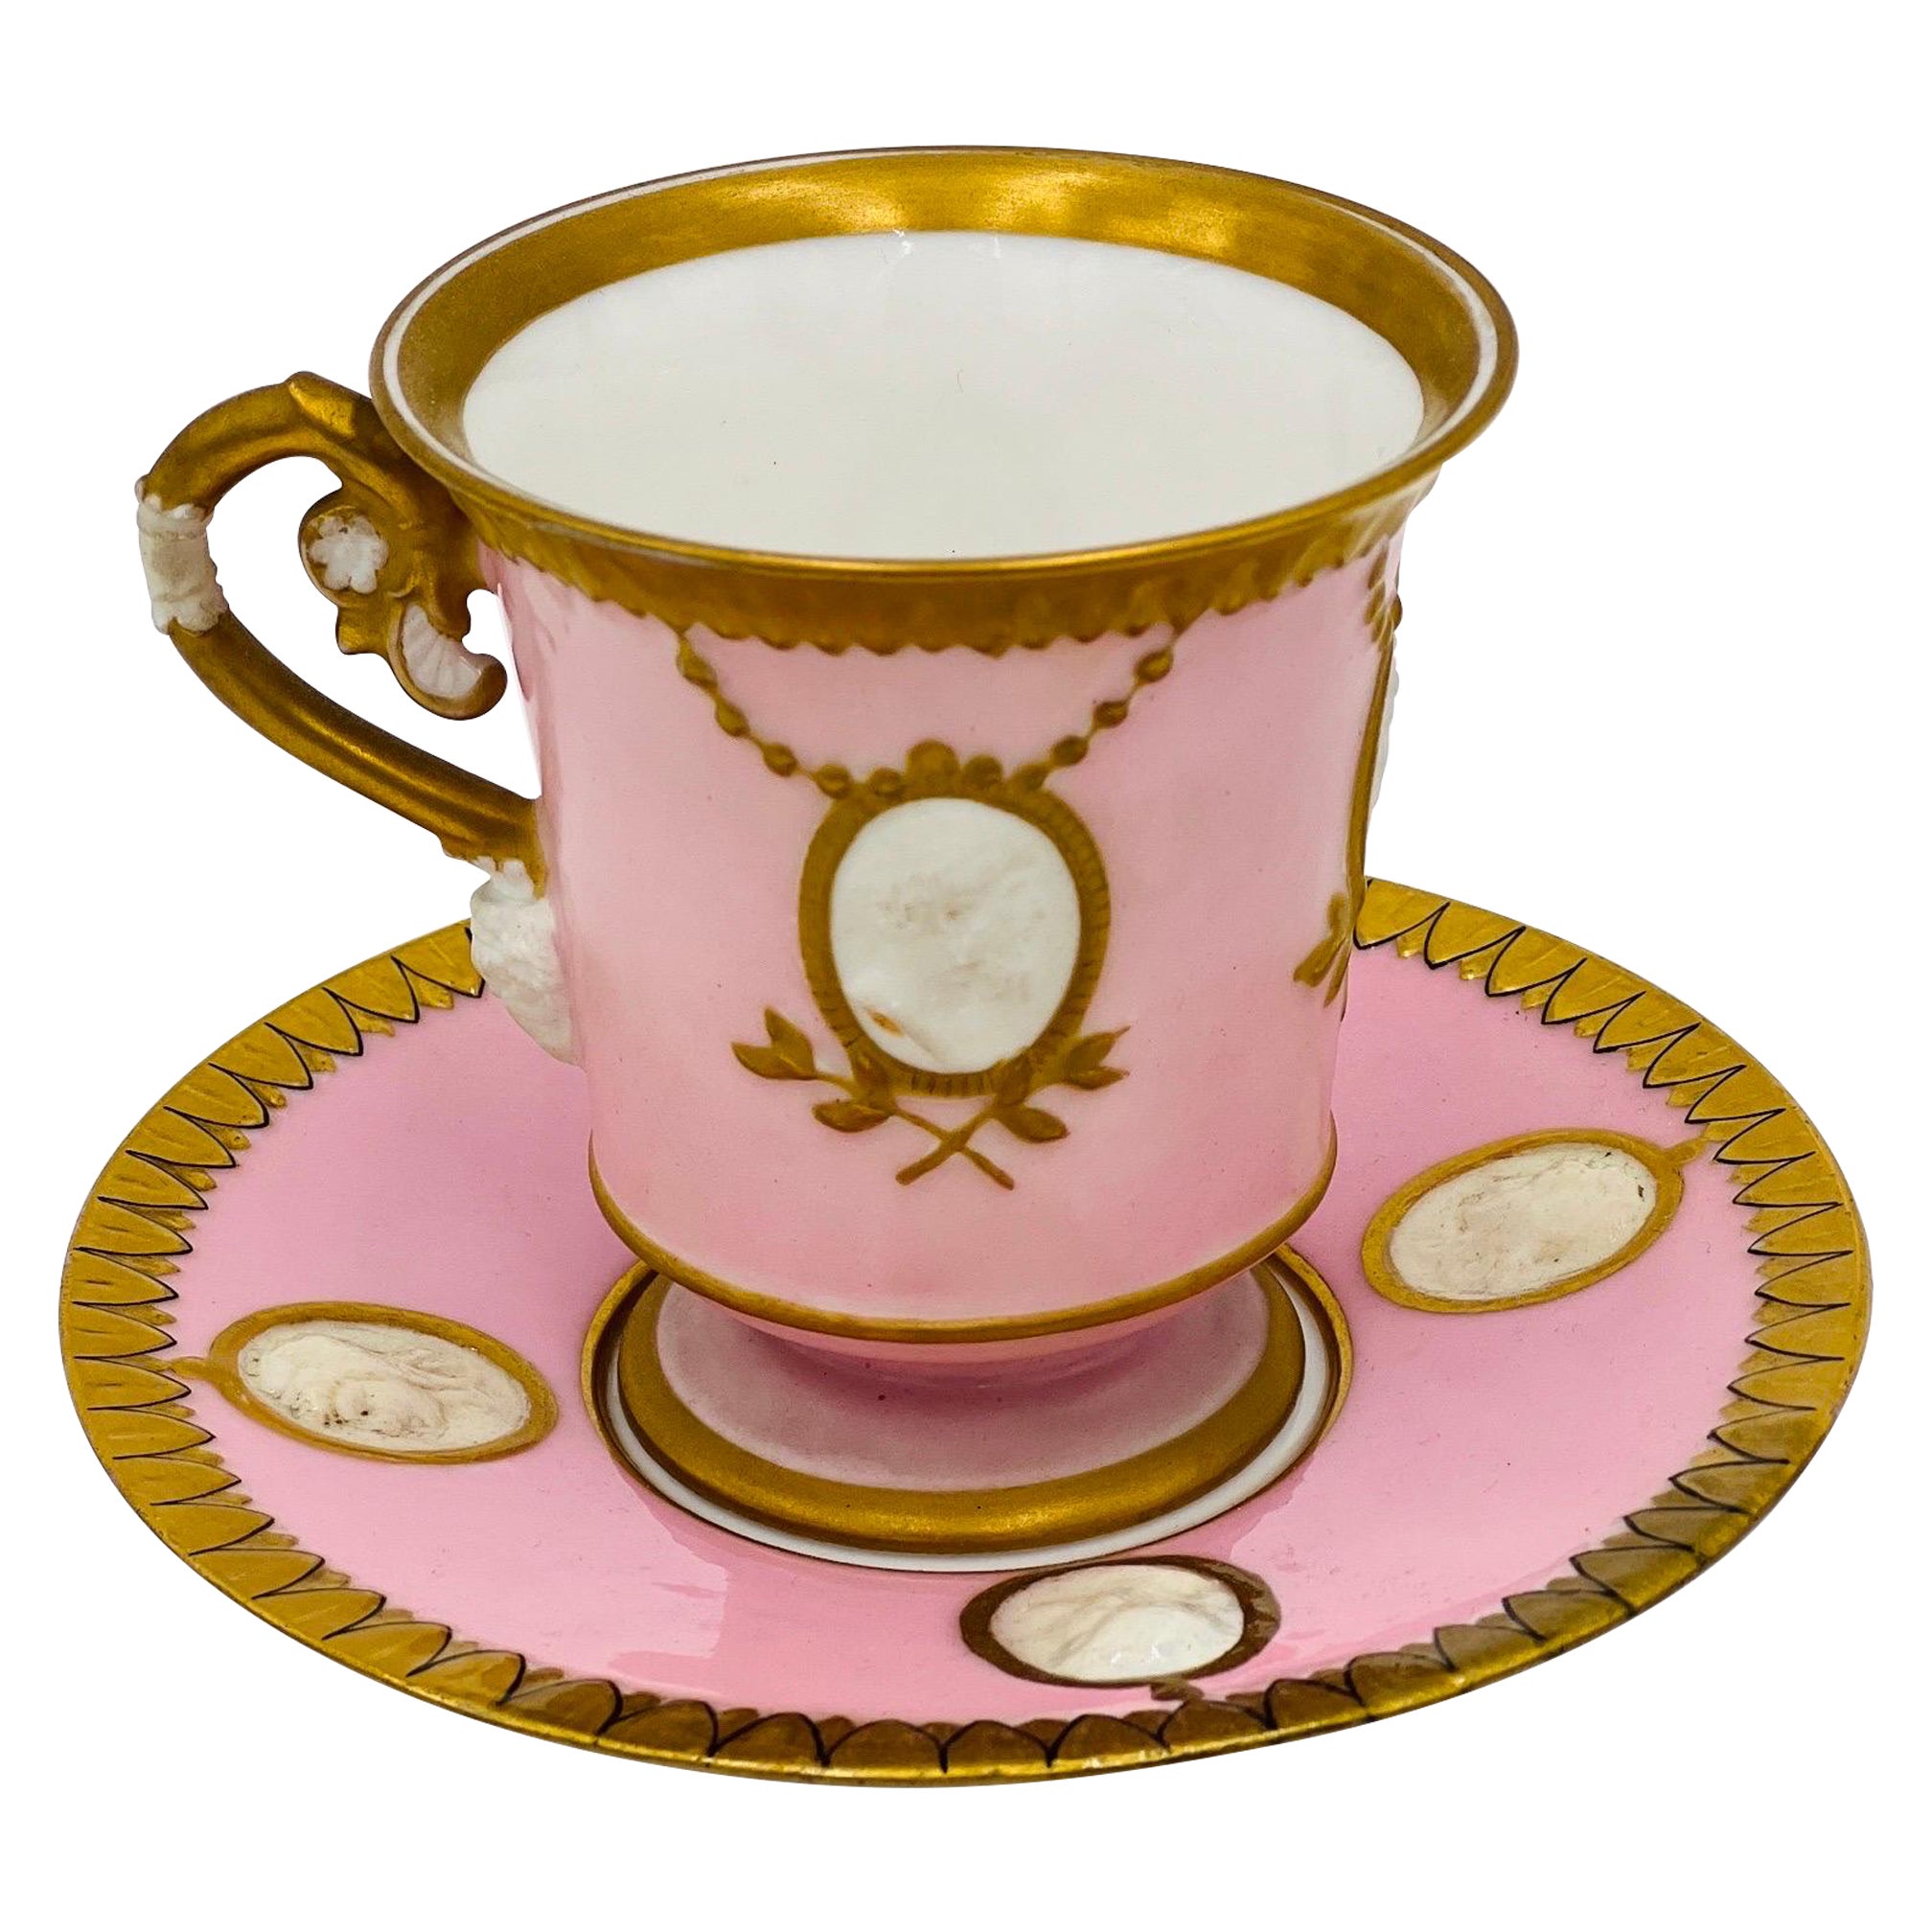 Seltene klassische Teekanne und Untertasse im alten Pariser Empire-Stil mit Biskuit Gesichtern und Widderkopf